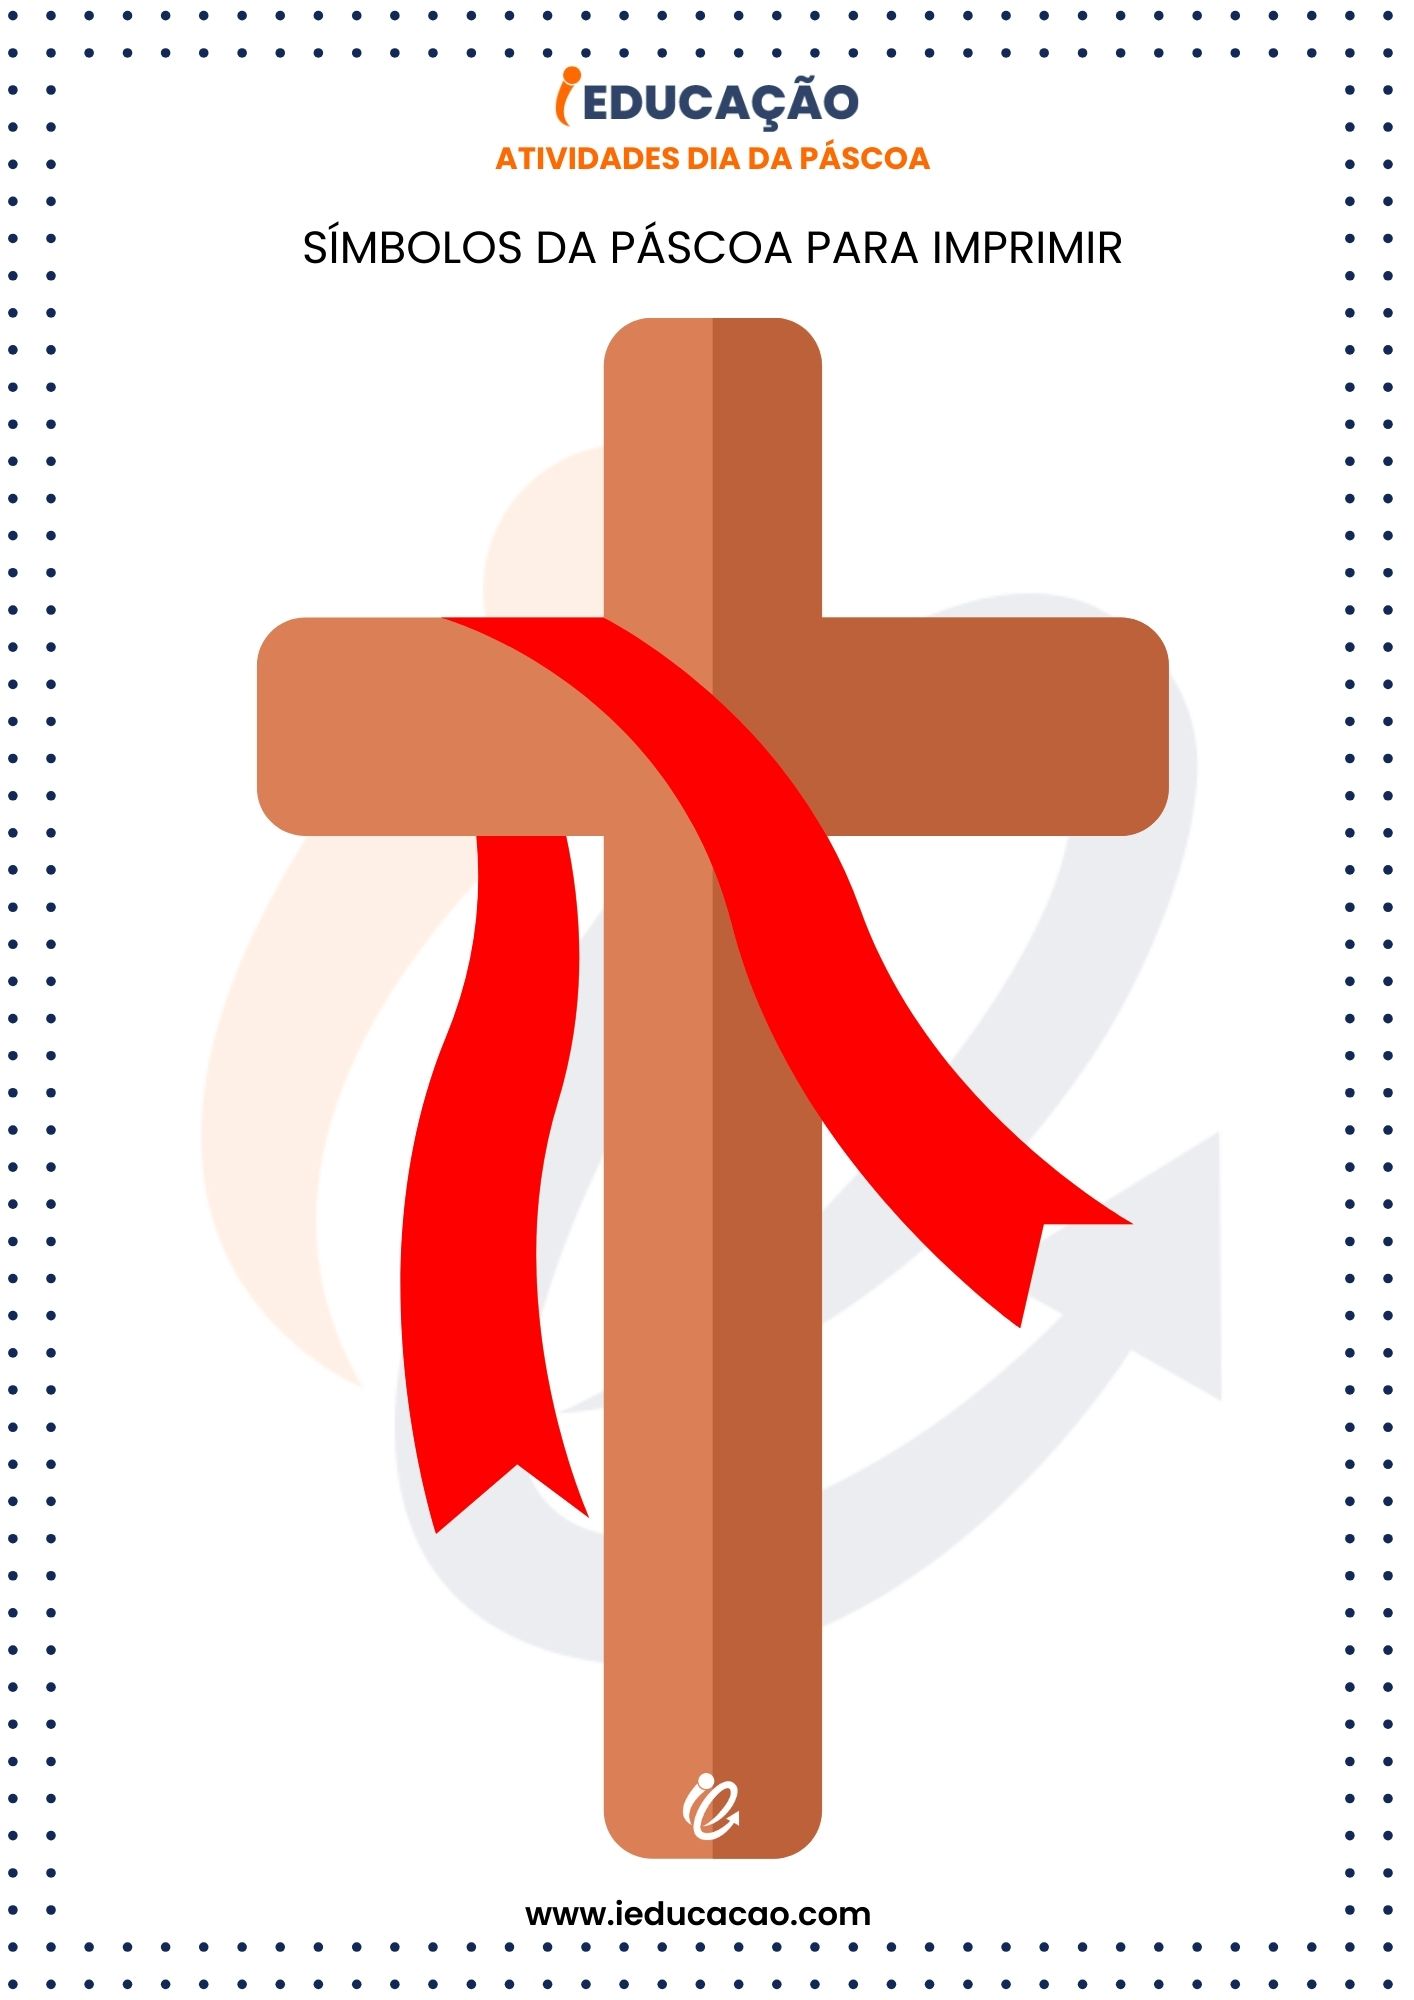 Os Símbolos da Páscoa para Imprimir cruz